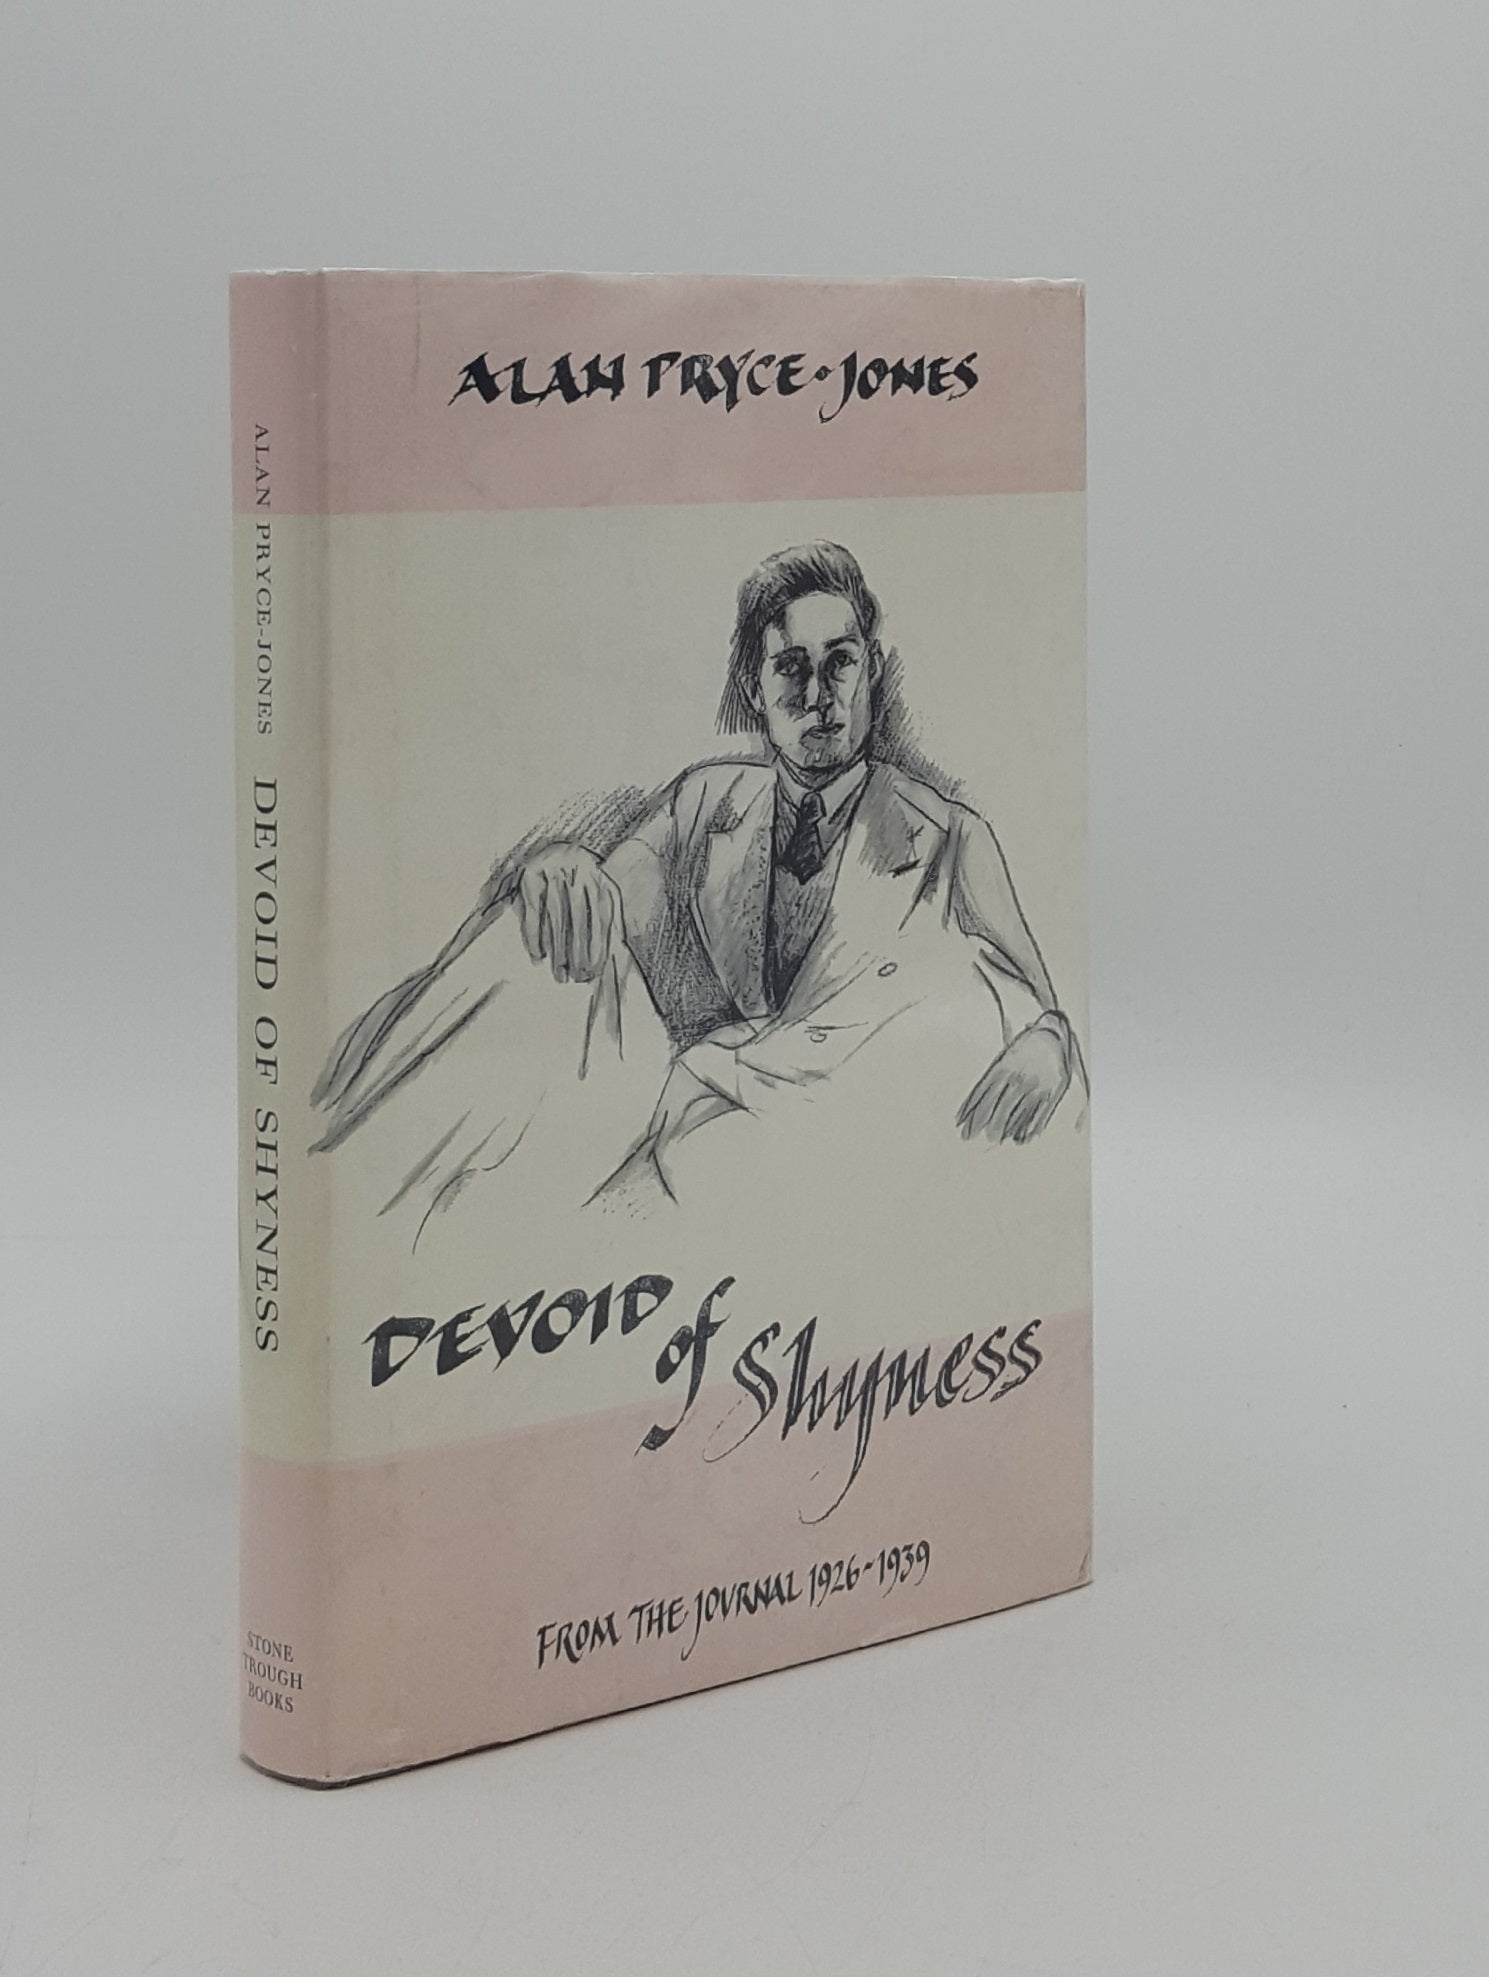 PRYCE-JONES Alan, BYRNE John - Devoid of Shyness from the Journal 1926-1939